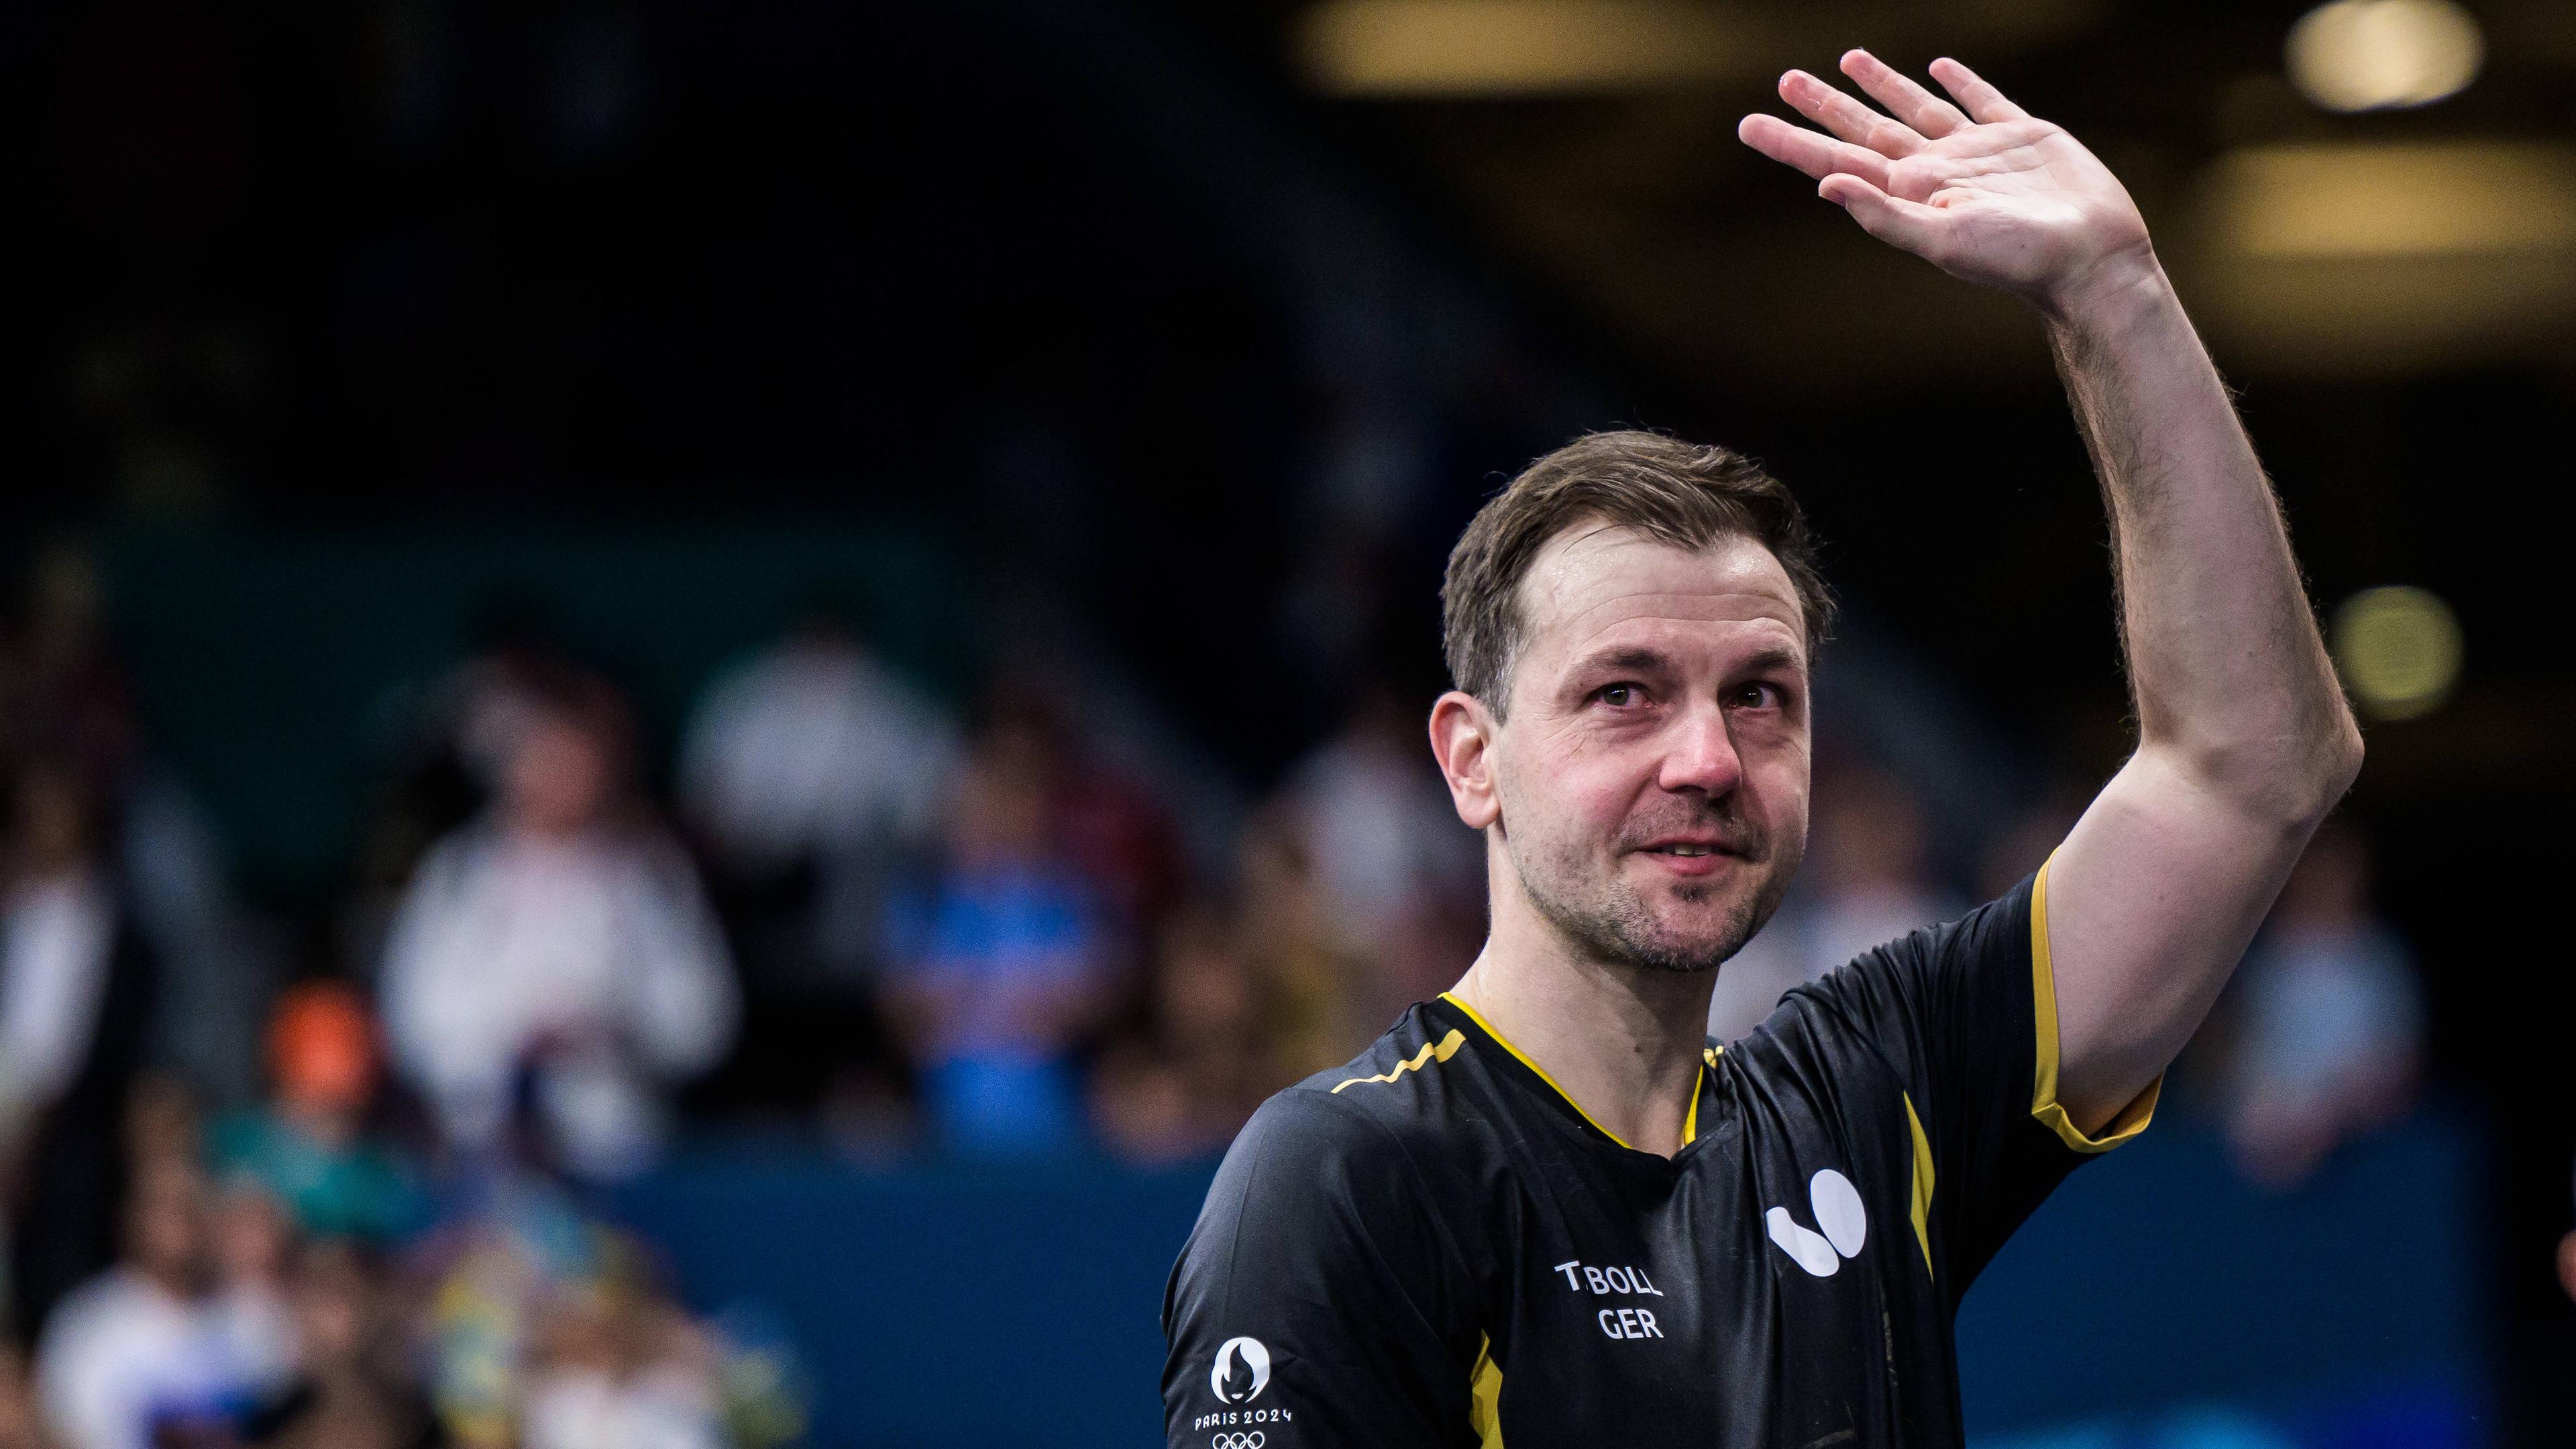 Tischtennislegende Timo Boll beendet seine internationale Karriere und verlässt weinend das Feld nachdem er das Viertelfinale gegen Schweden verliert.